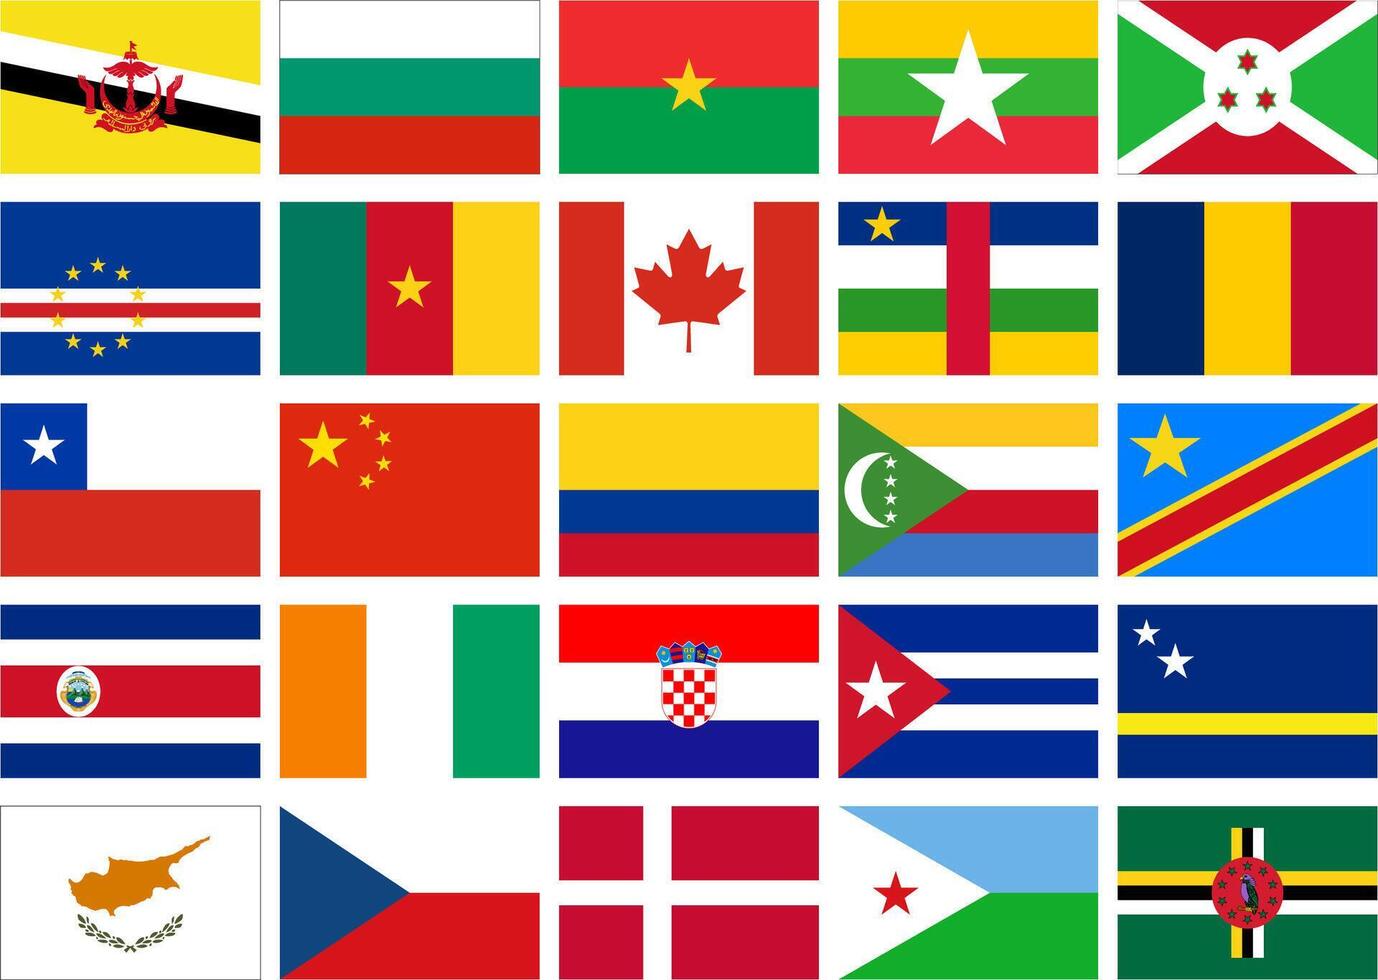 mundo bandera plano icono pictograma símbolo visual ilustración conjunto vector